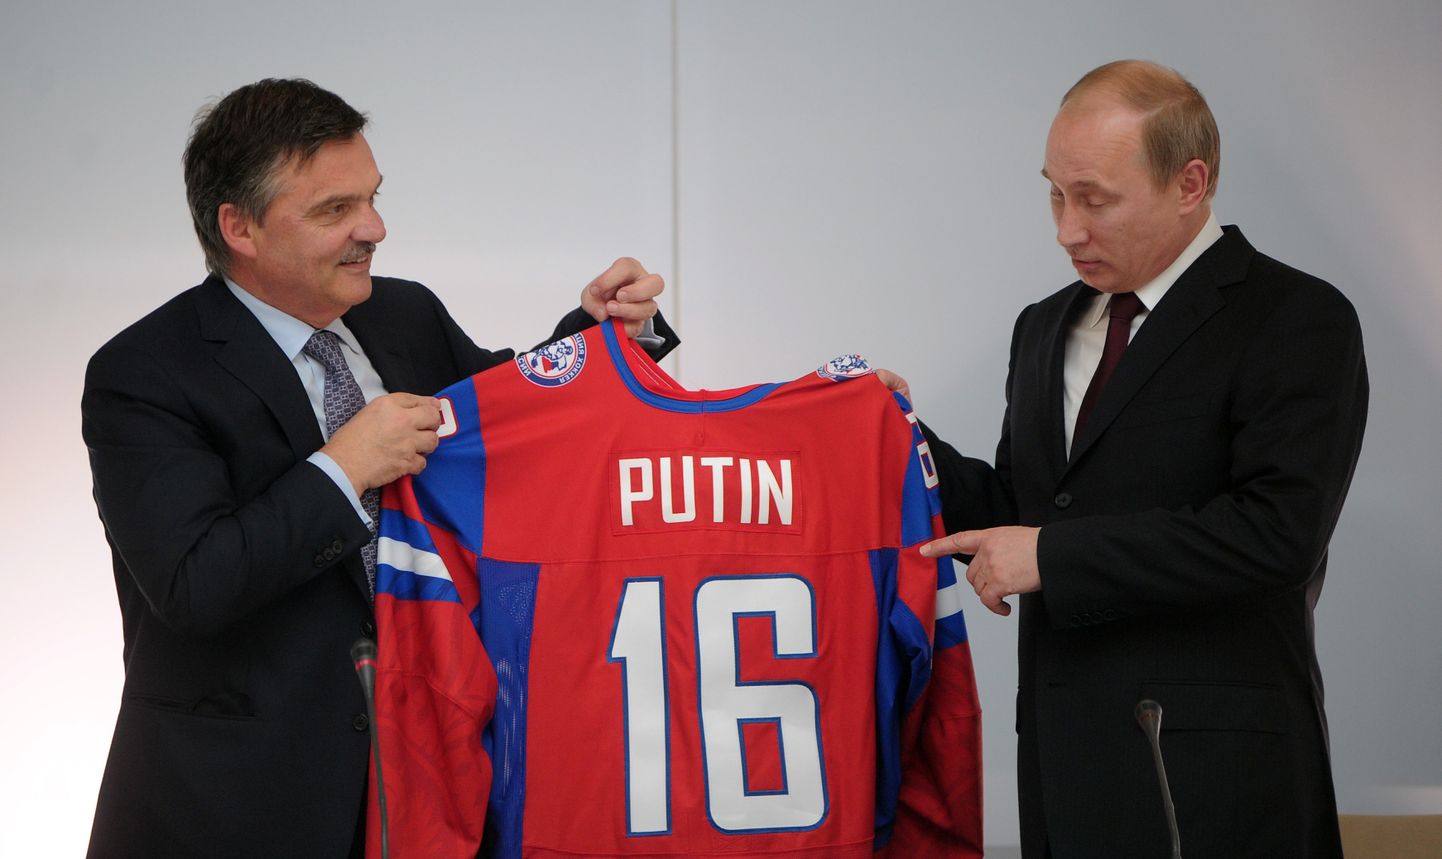 Rene Faseli ja Vladimir Putini sõprus ulatus aastate taha. Sel fotol annab šveitslane 2011. aasta MMi korraldusõiguse tähistamiseks Venemaa presidendile üle nimelise hokisärgi.